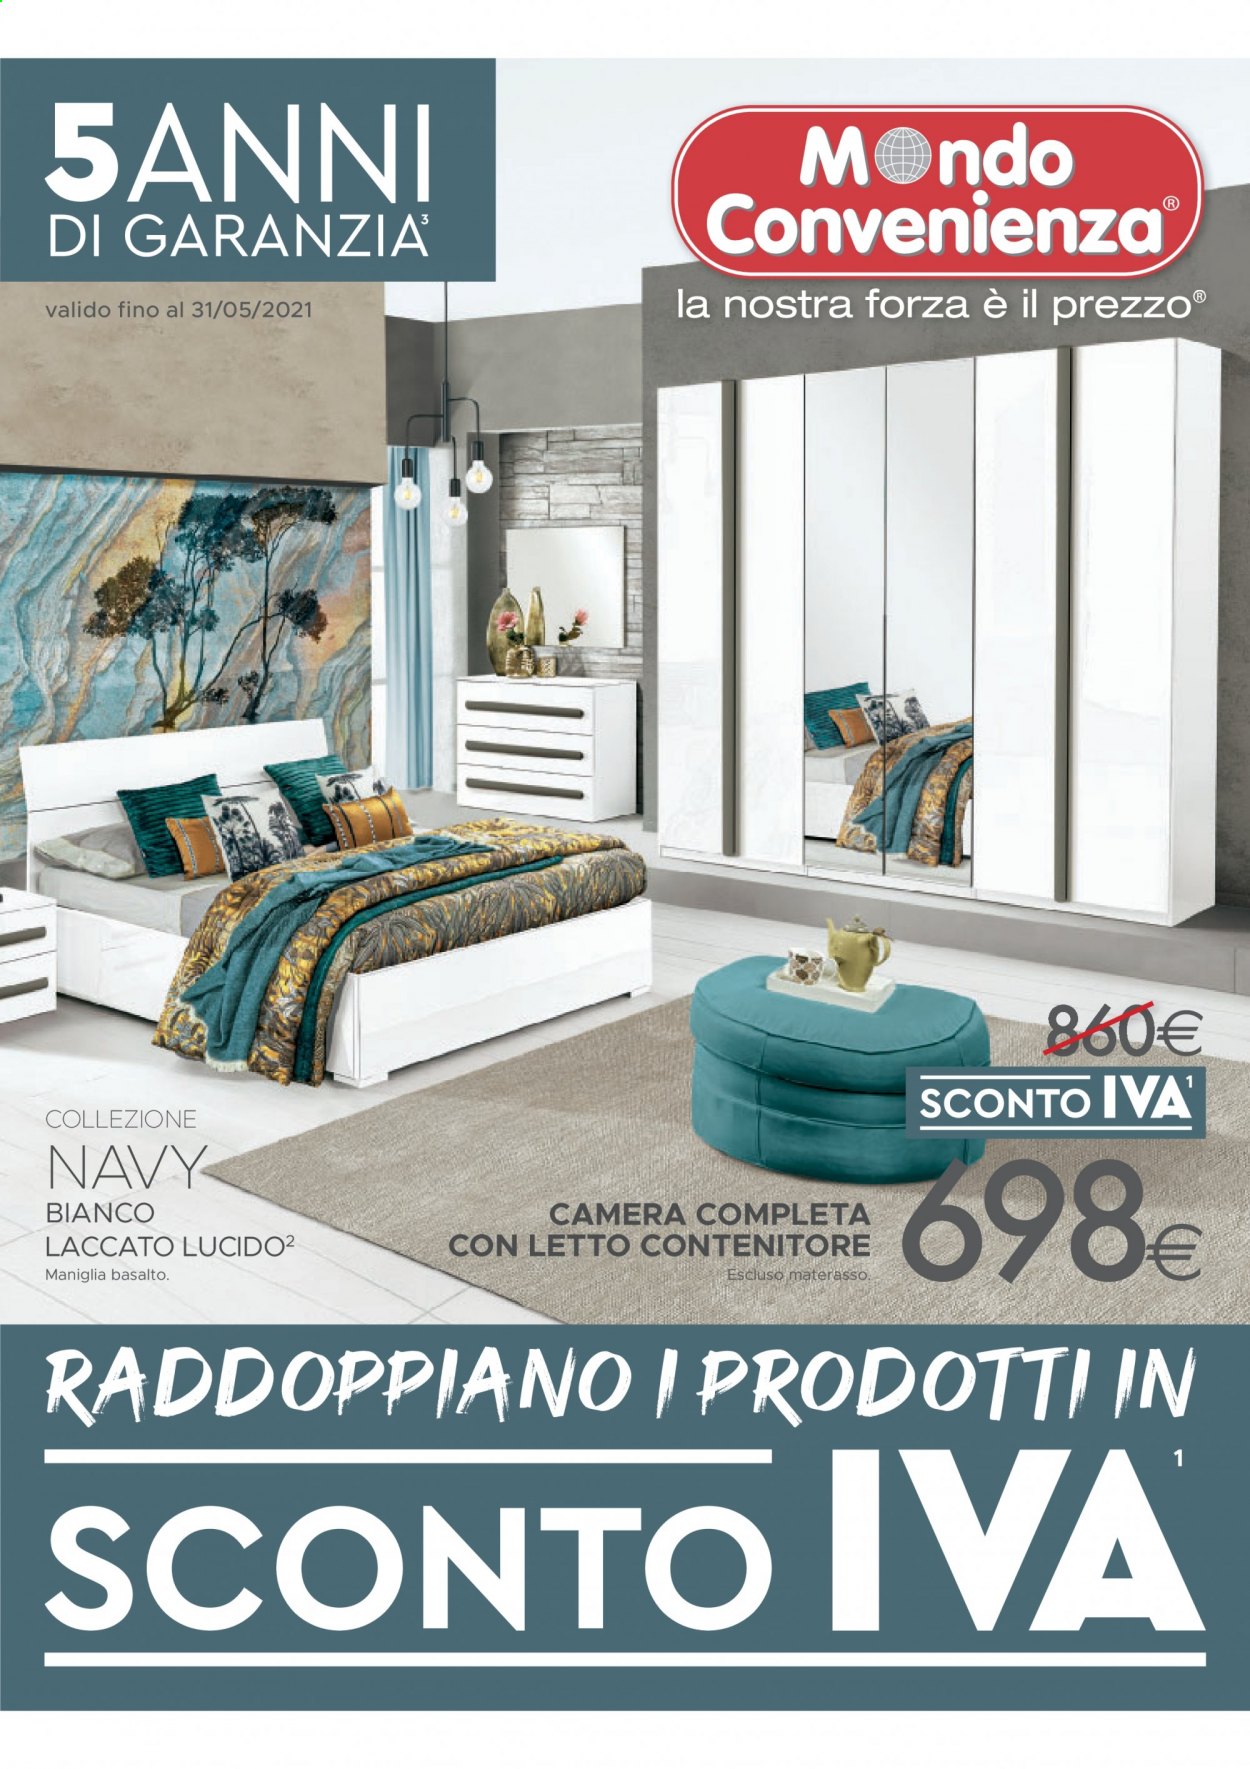 thumbnail - Volantino Mondo Convenienza - 2/3/2021 - 31/5/2021 - Prodotti in offerta - letto contenitore, contenitore. Pagina 1.